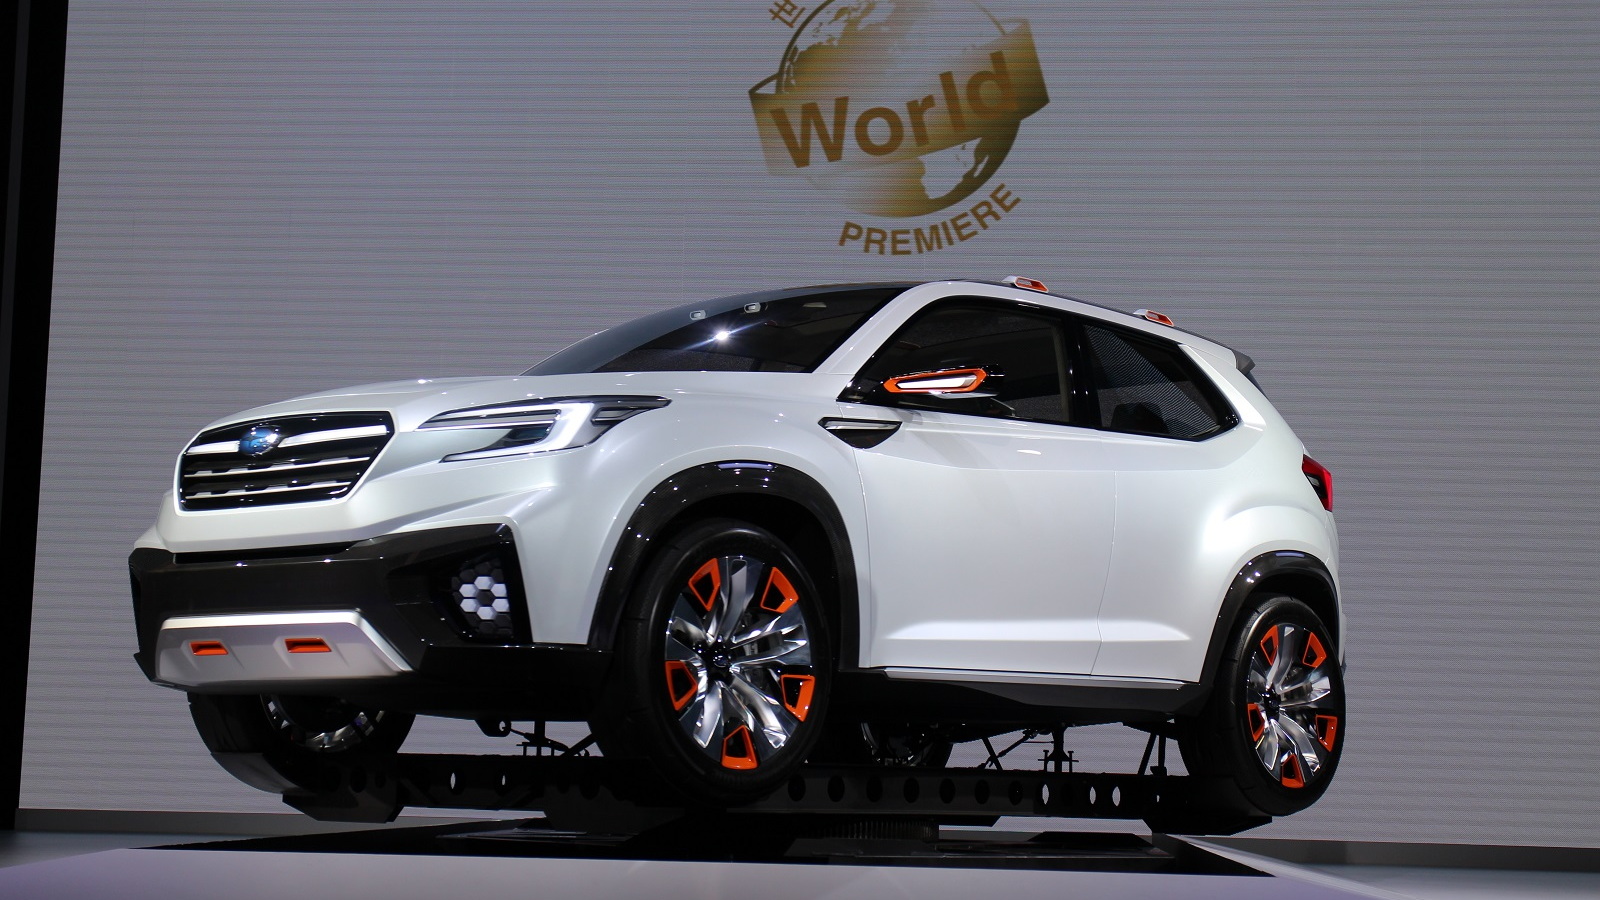 Subaru Viziv Future Concept, 2015 Tokyo Motor Show